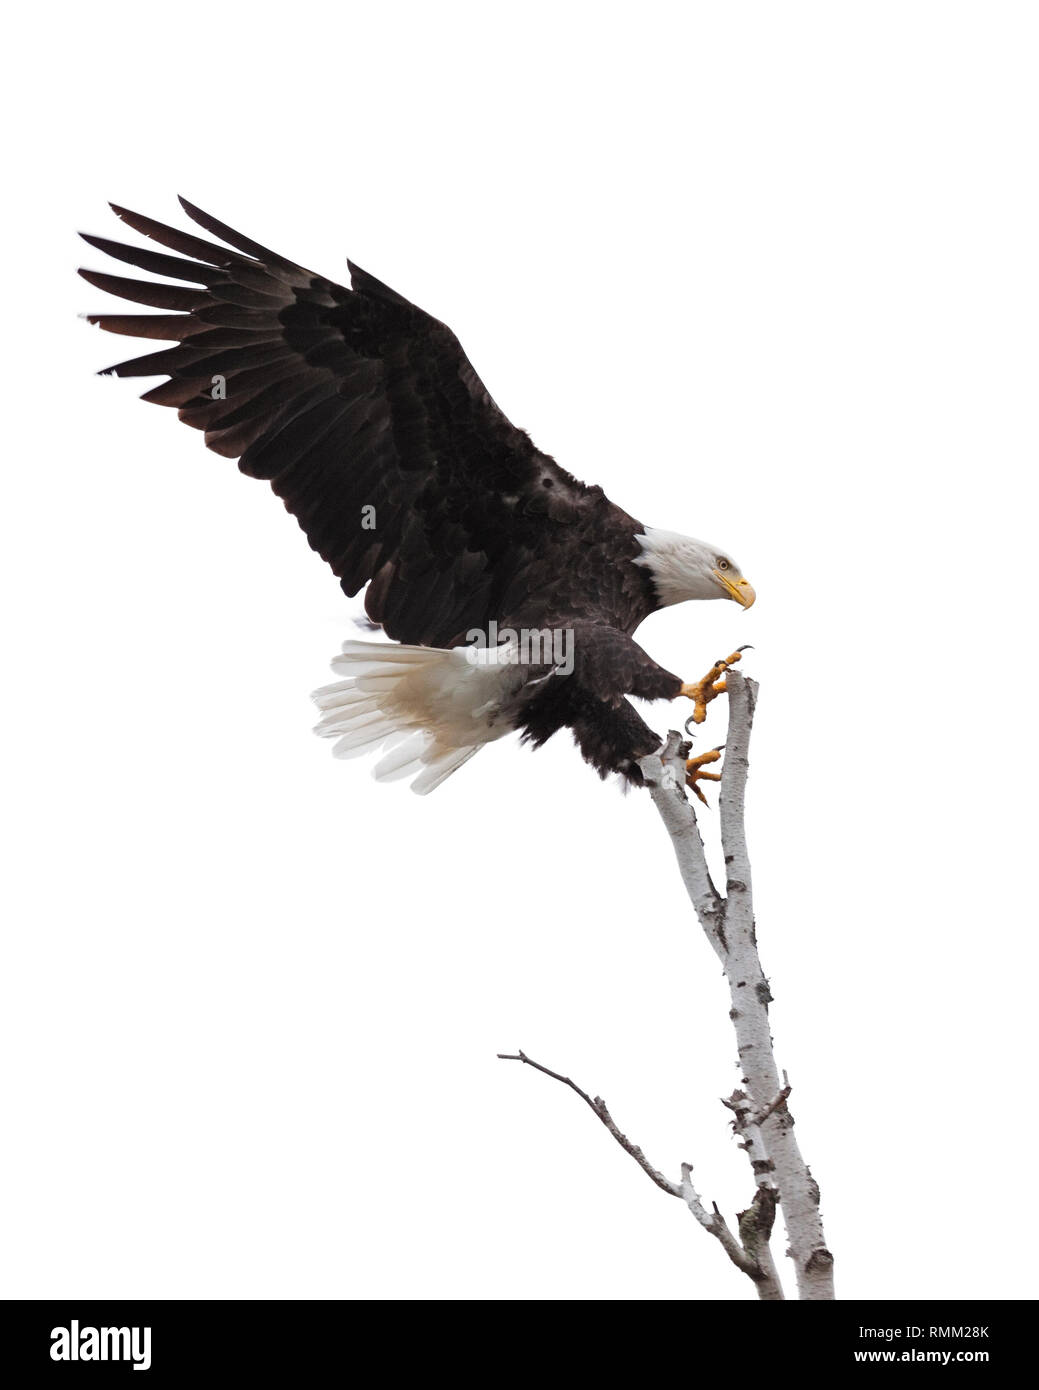 Flügel und Klauen Verbreitung weit geöffnet, ein Weißkopfseeadler ist Laser bei der Landung an der Spitze einer Birke. Weißer Hintergrund Stockfoto